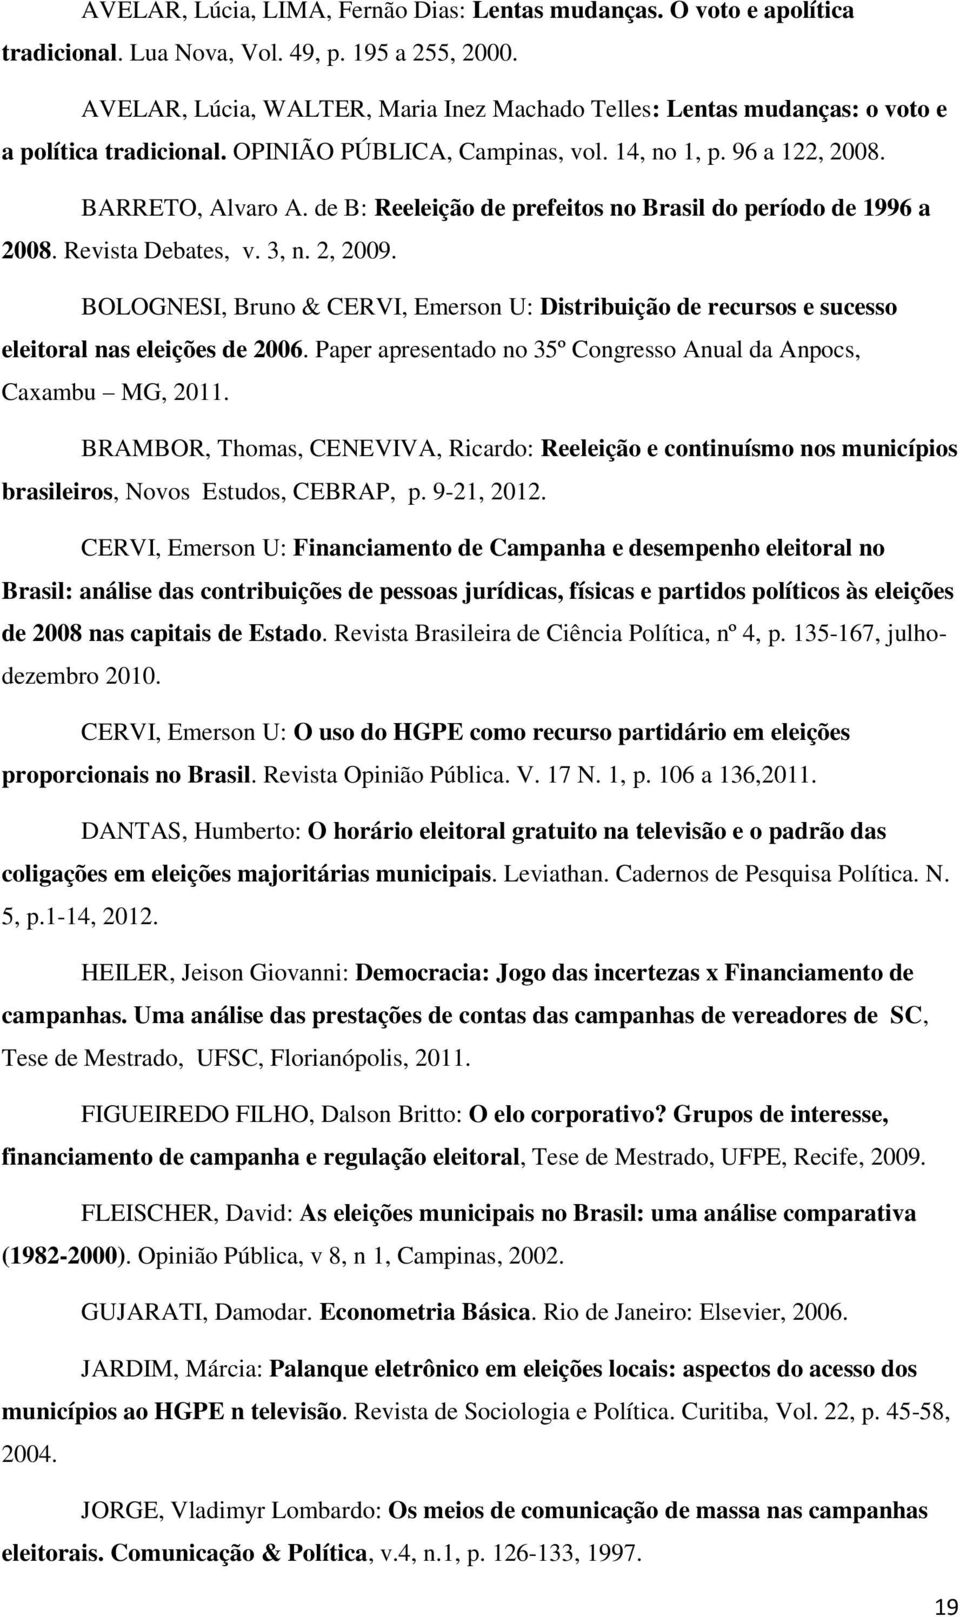 de B: Reeleição de prefeitos no Brasil do período de 1996 a 2008. Revista Debates, v. 3, n. 2, 2009.